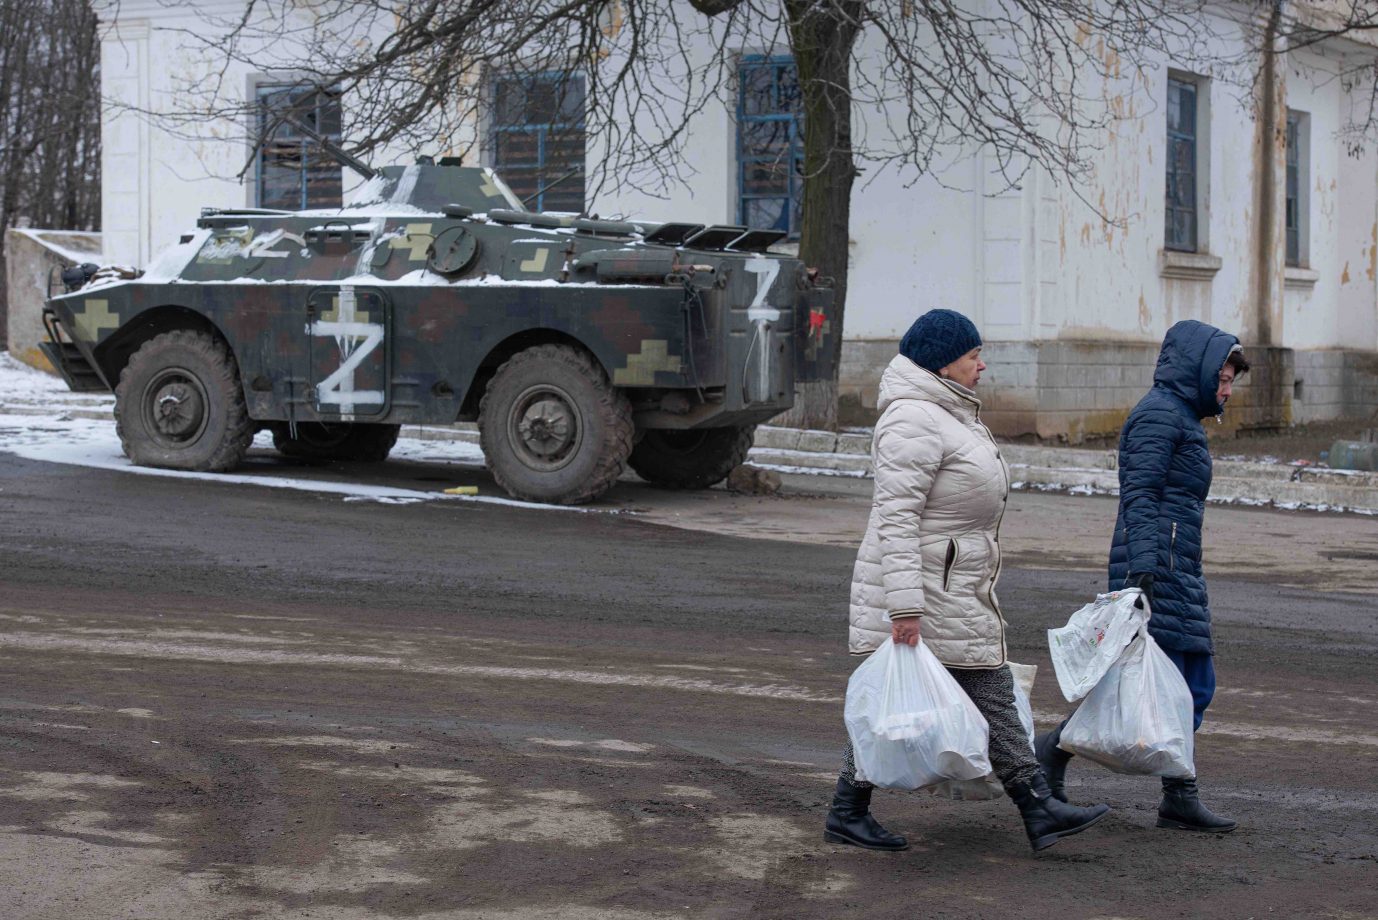 Zivilisten laufen an einem russischen Schützenpanzer vorbei Viele Ukrainer leben mittlerweile unter russischer Besatzung Foto: picture alliance / AA | Stringer